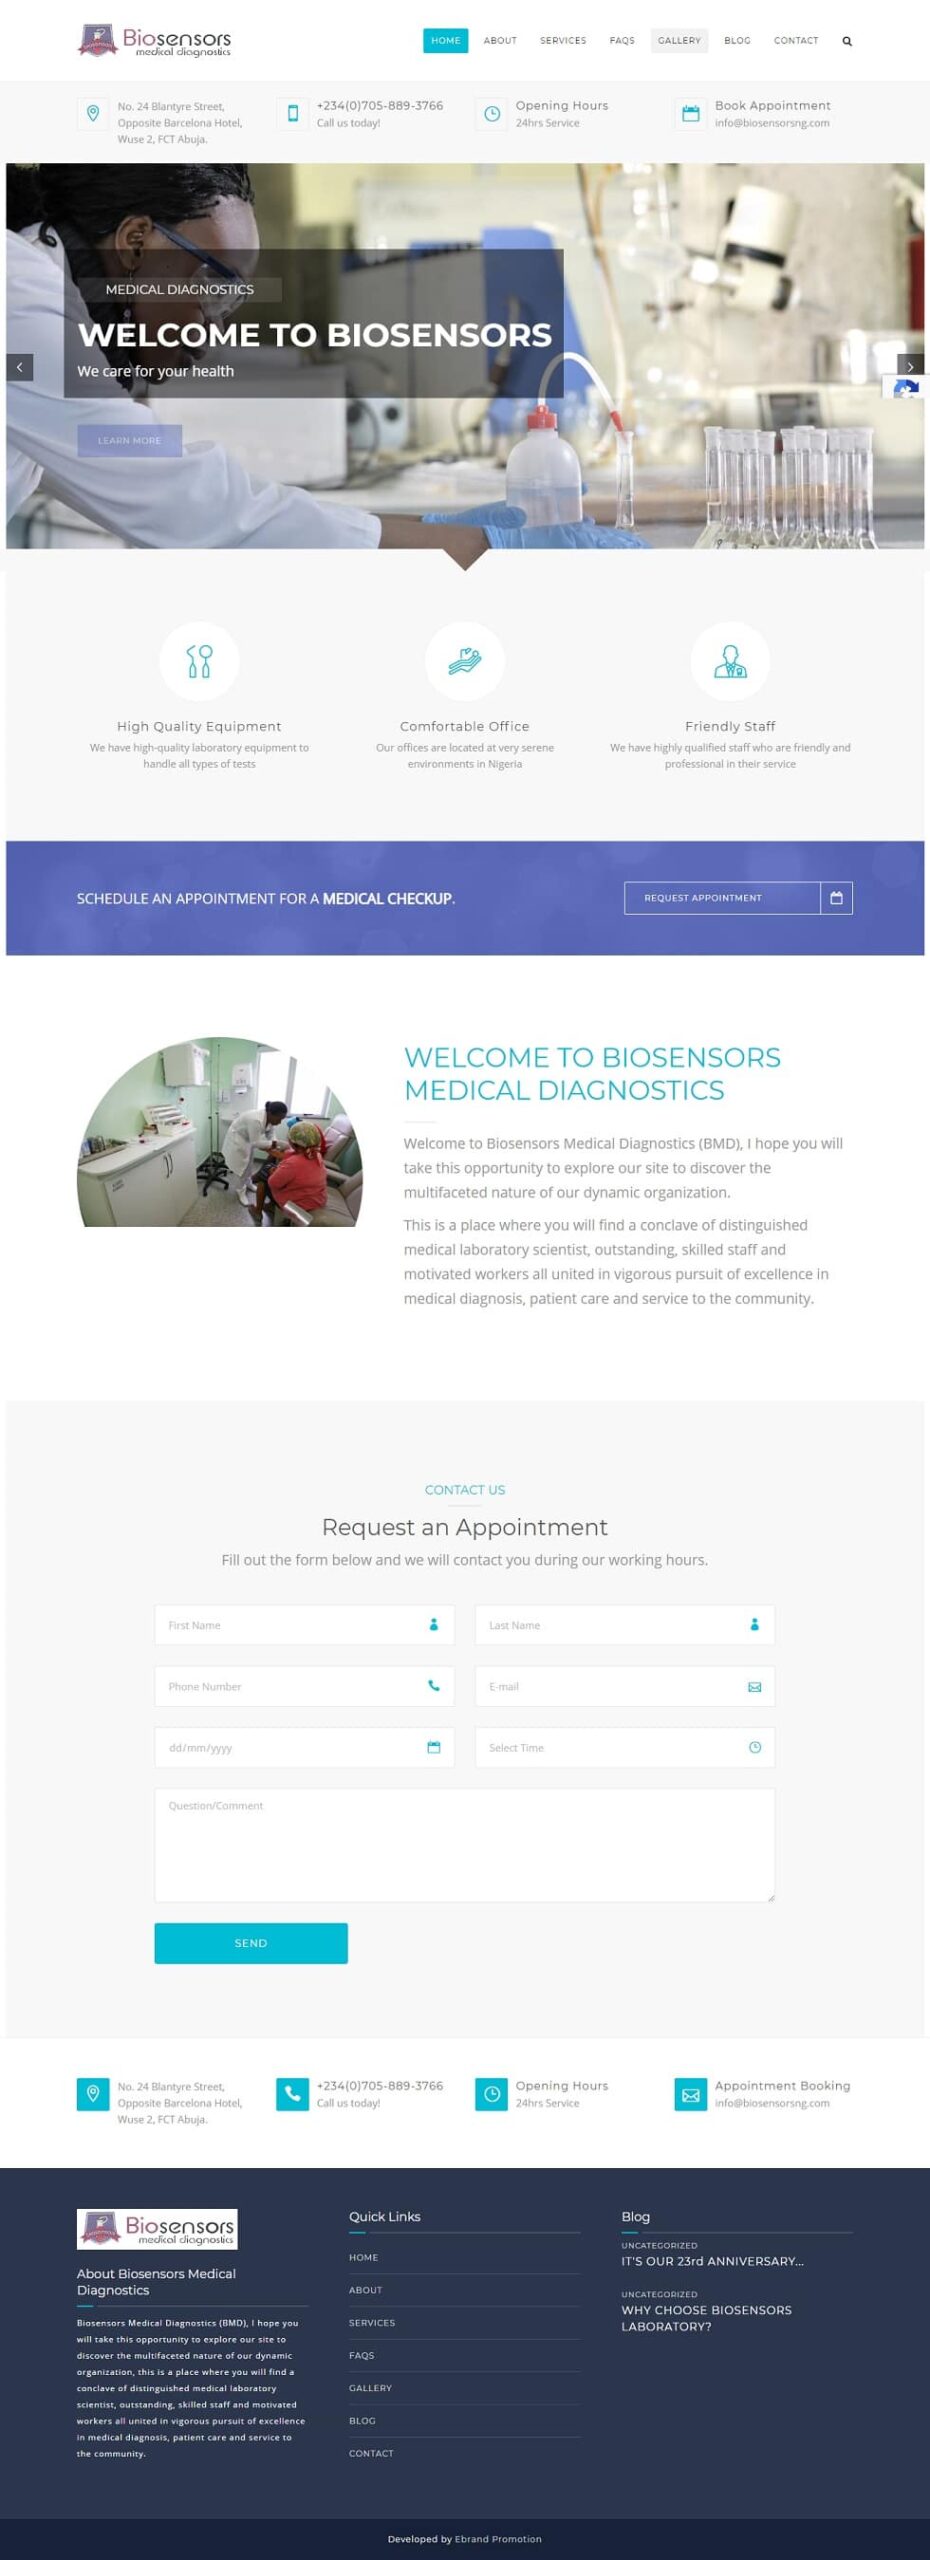 Bisensors website design project